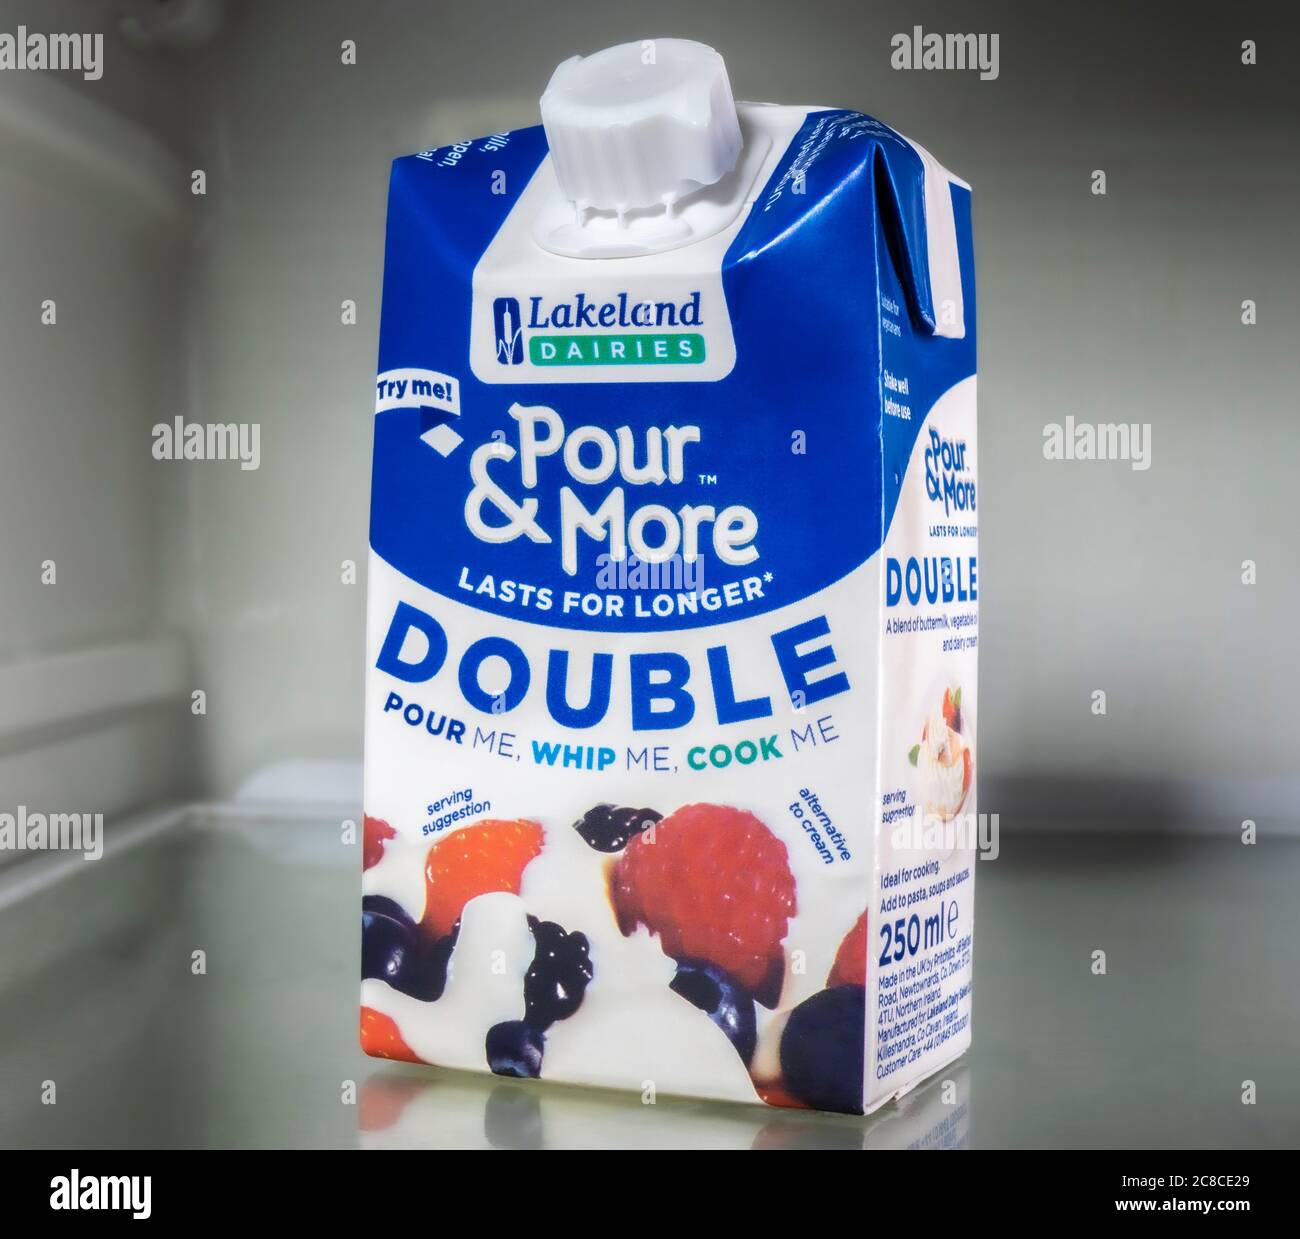 Un cartone di Lakeland Dairies si versa e molto altro su un ripiano frigo – un ingrediente liquido principalmente di latticello per versare, montare e cucinare. Foto Stock